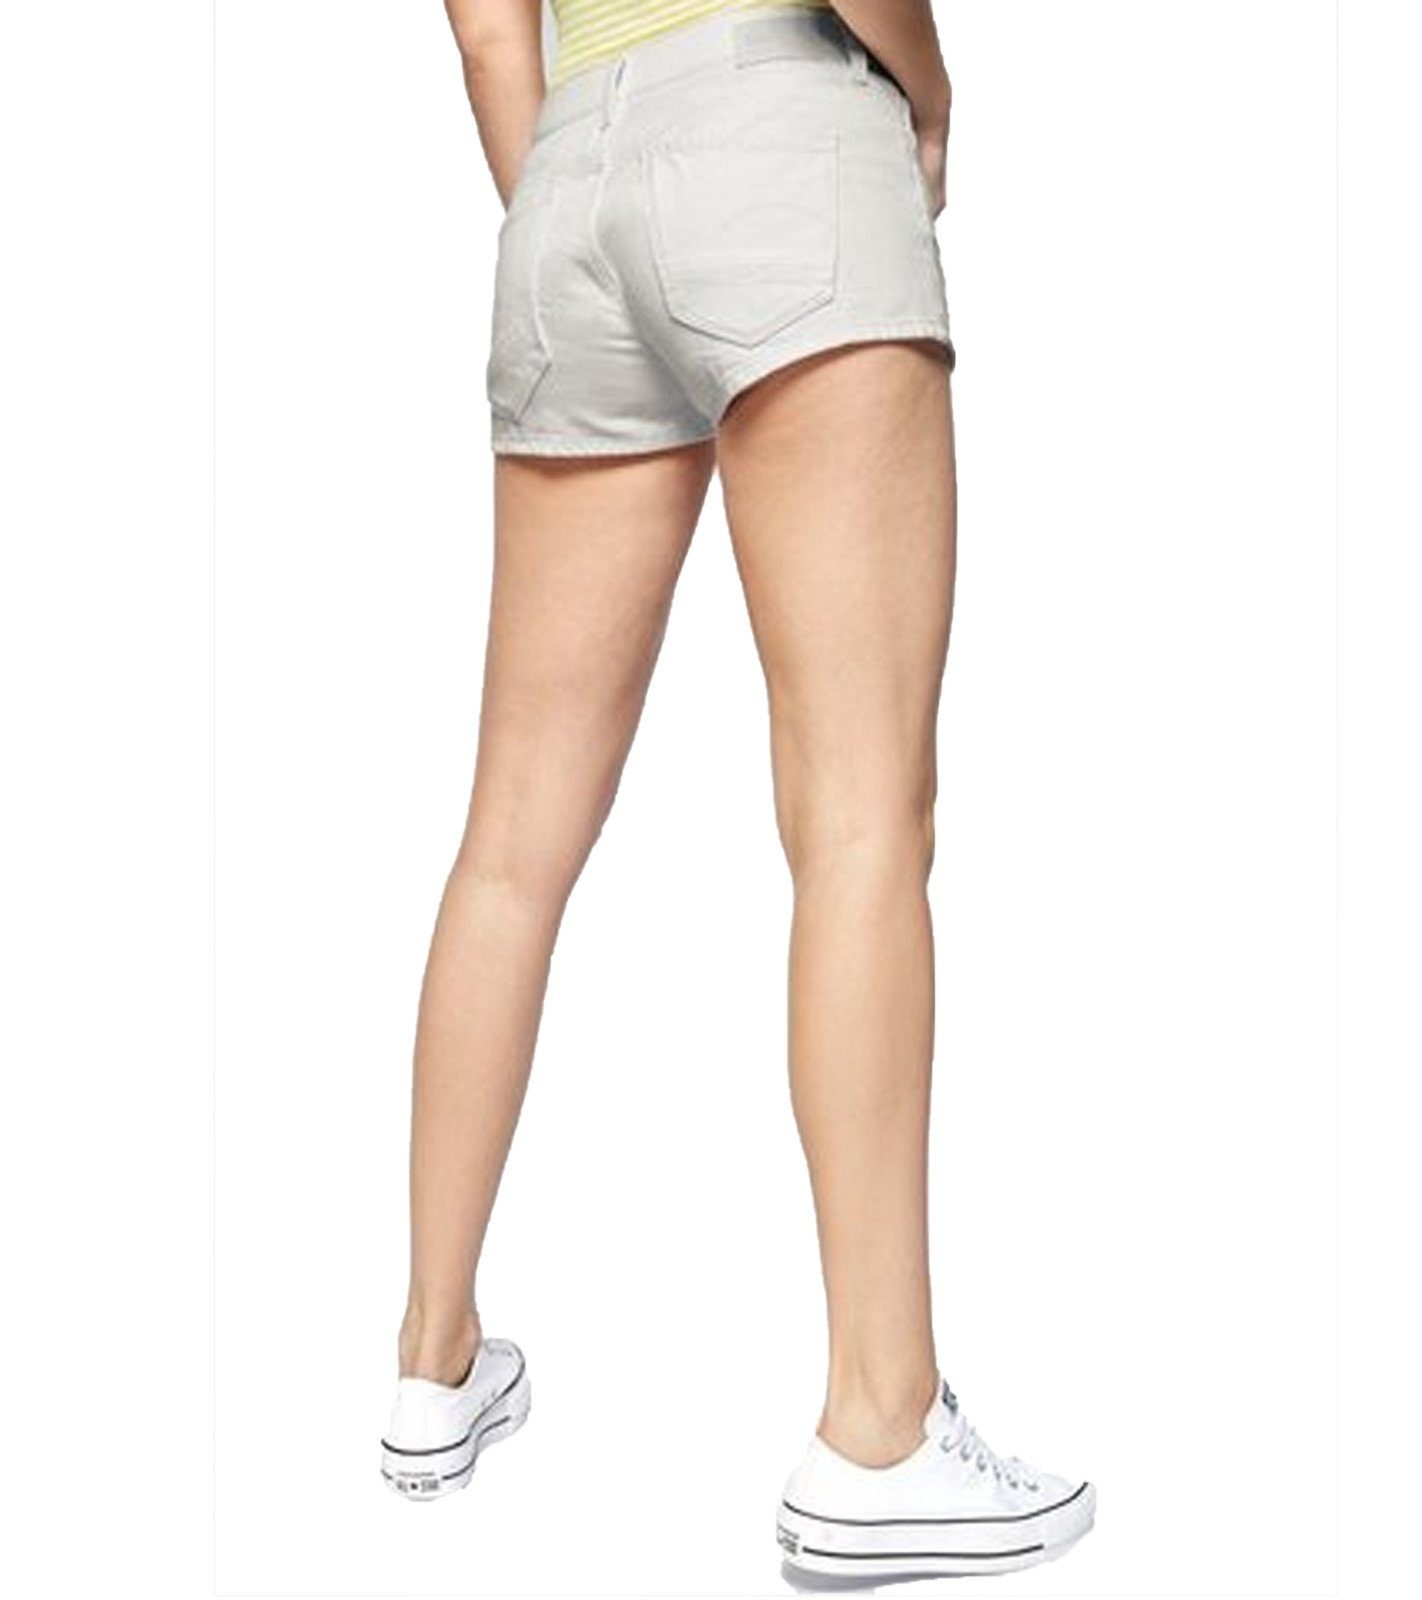 G-Star RAW Jeansshorts »G-Star RAW Jeans-Shorts Arc 2.0 hochwertige Damen  Denim-Hose im 5-Pocket-Design kurze Hose Weiß« online kaufen | OTTO